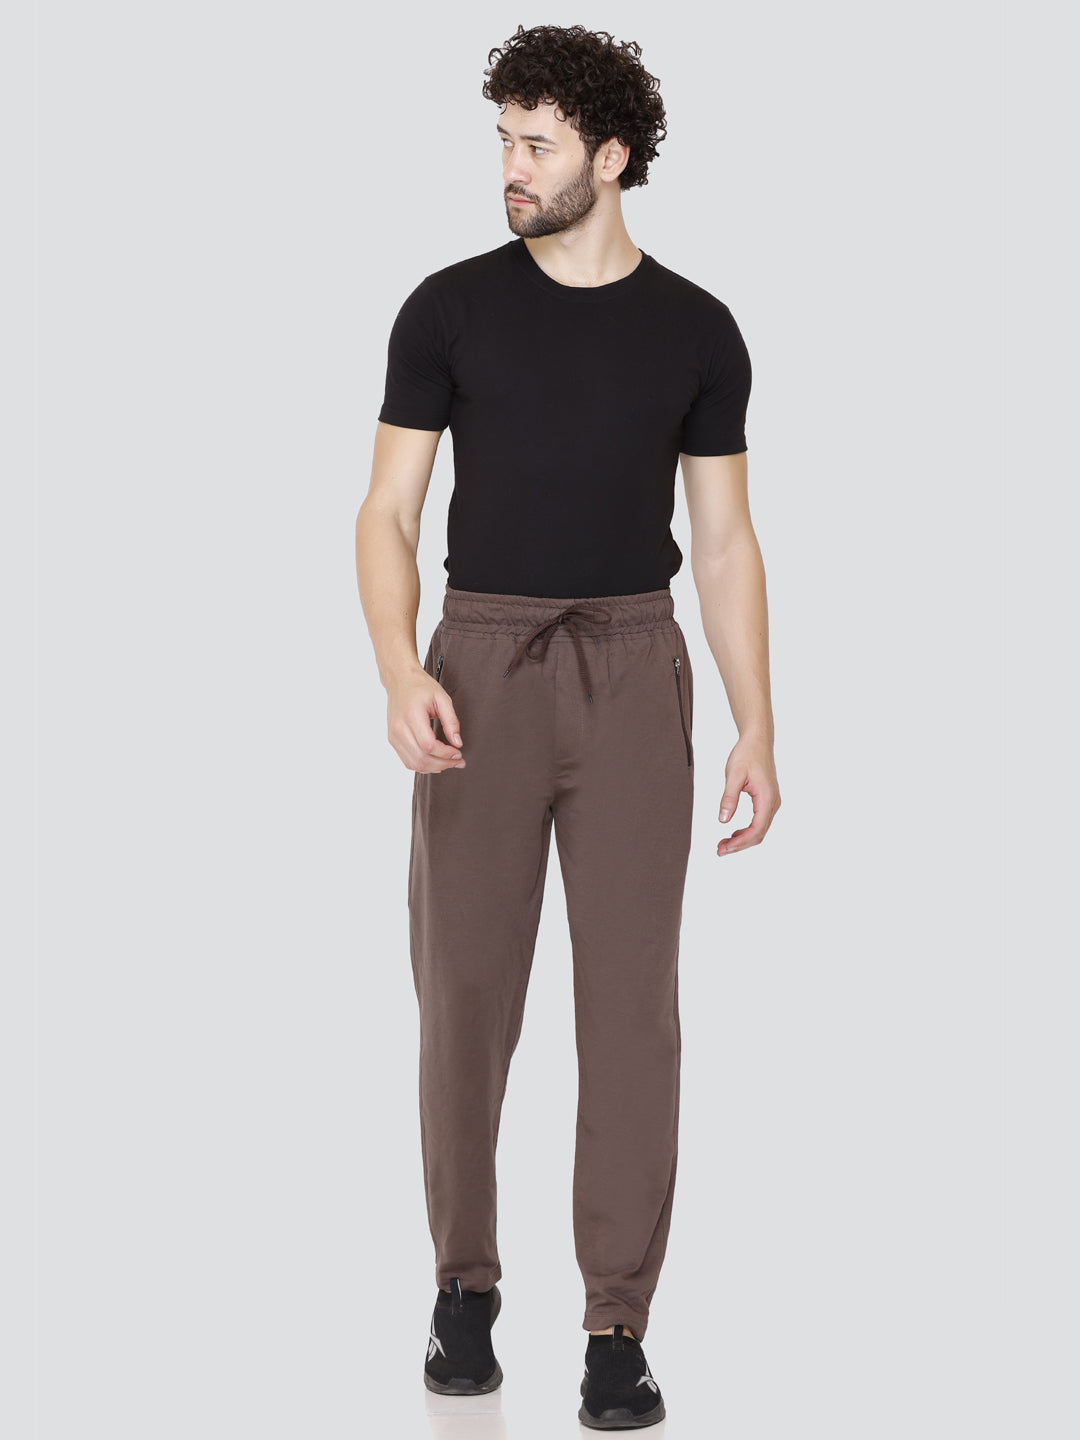 Mancrew Slim Fit Formal Pant for men - Formal Trousers - Dark Grey, Dark  Green Combo (Pack Of